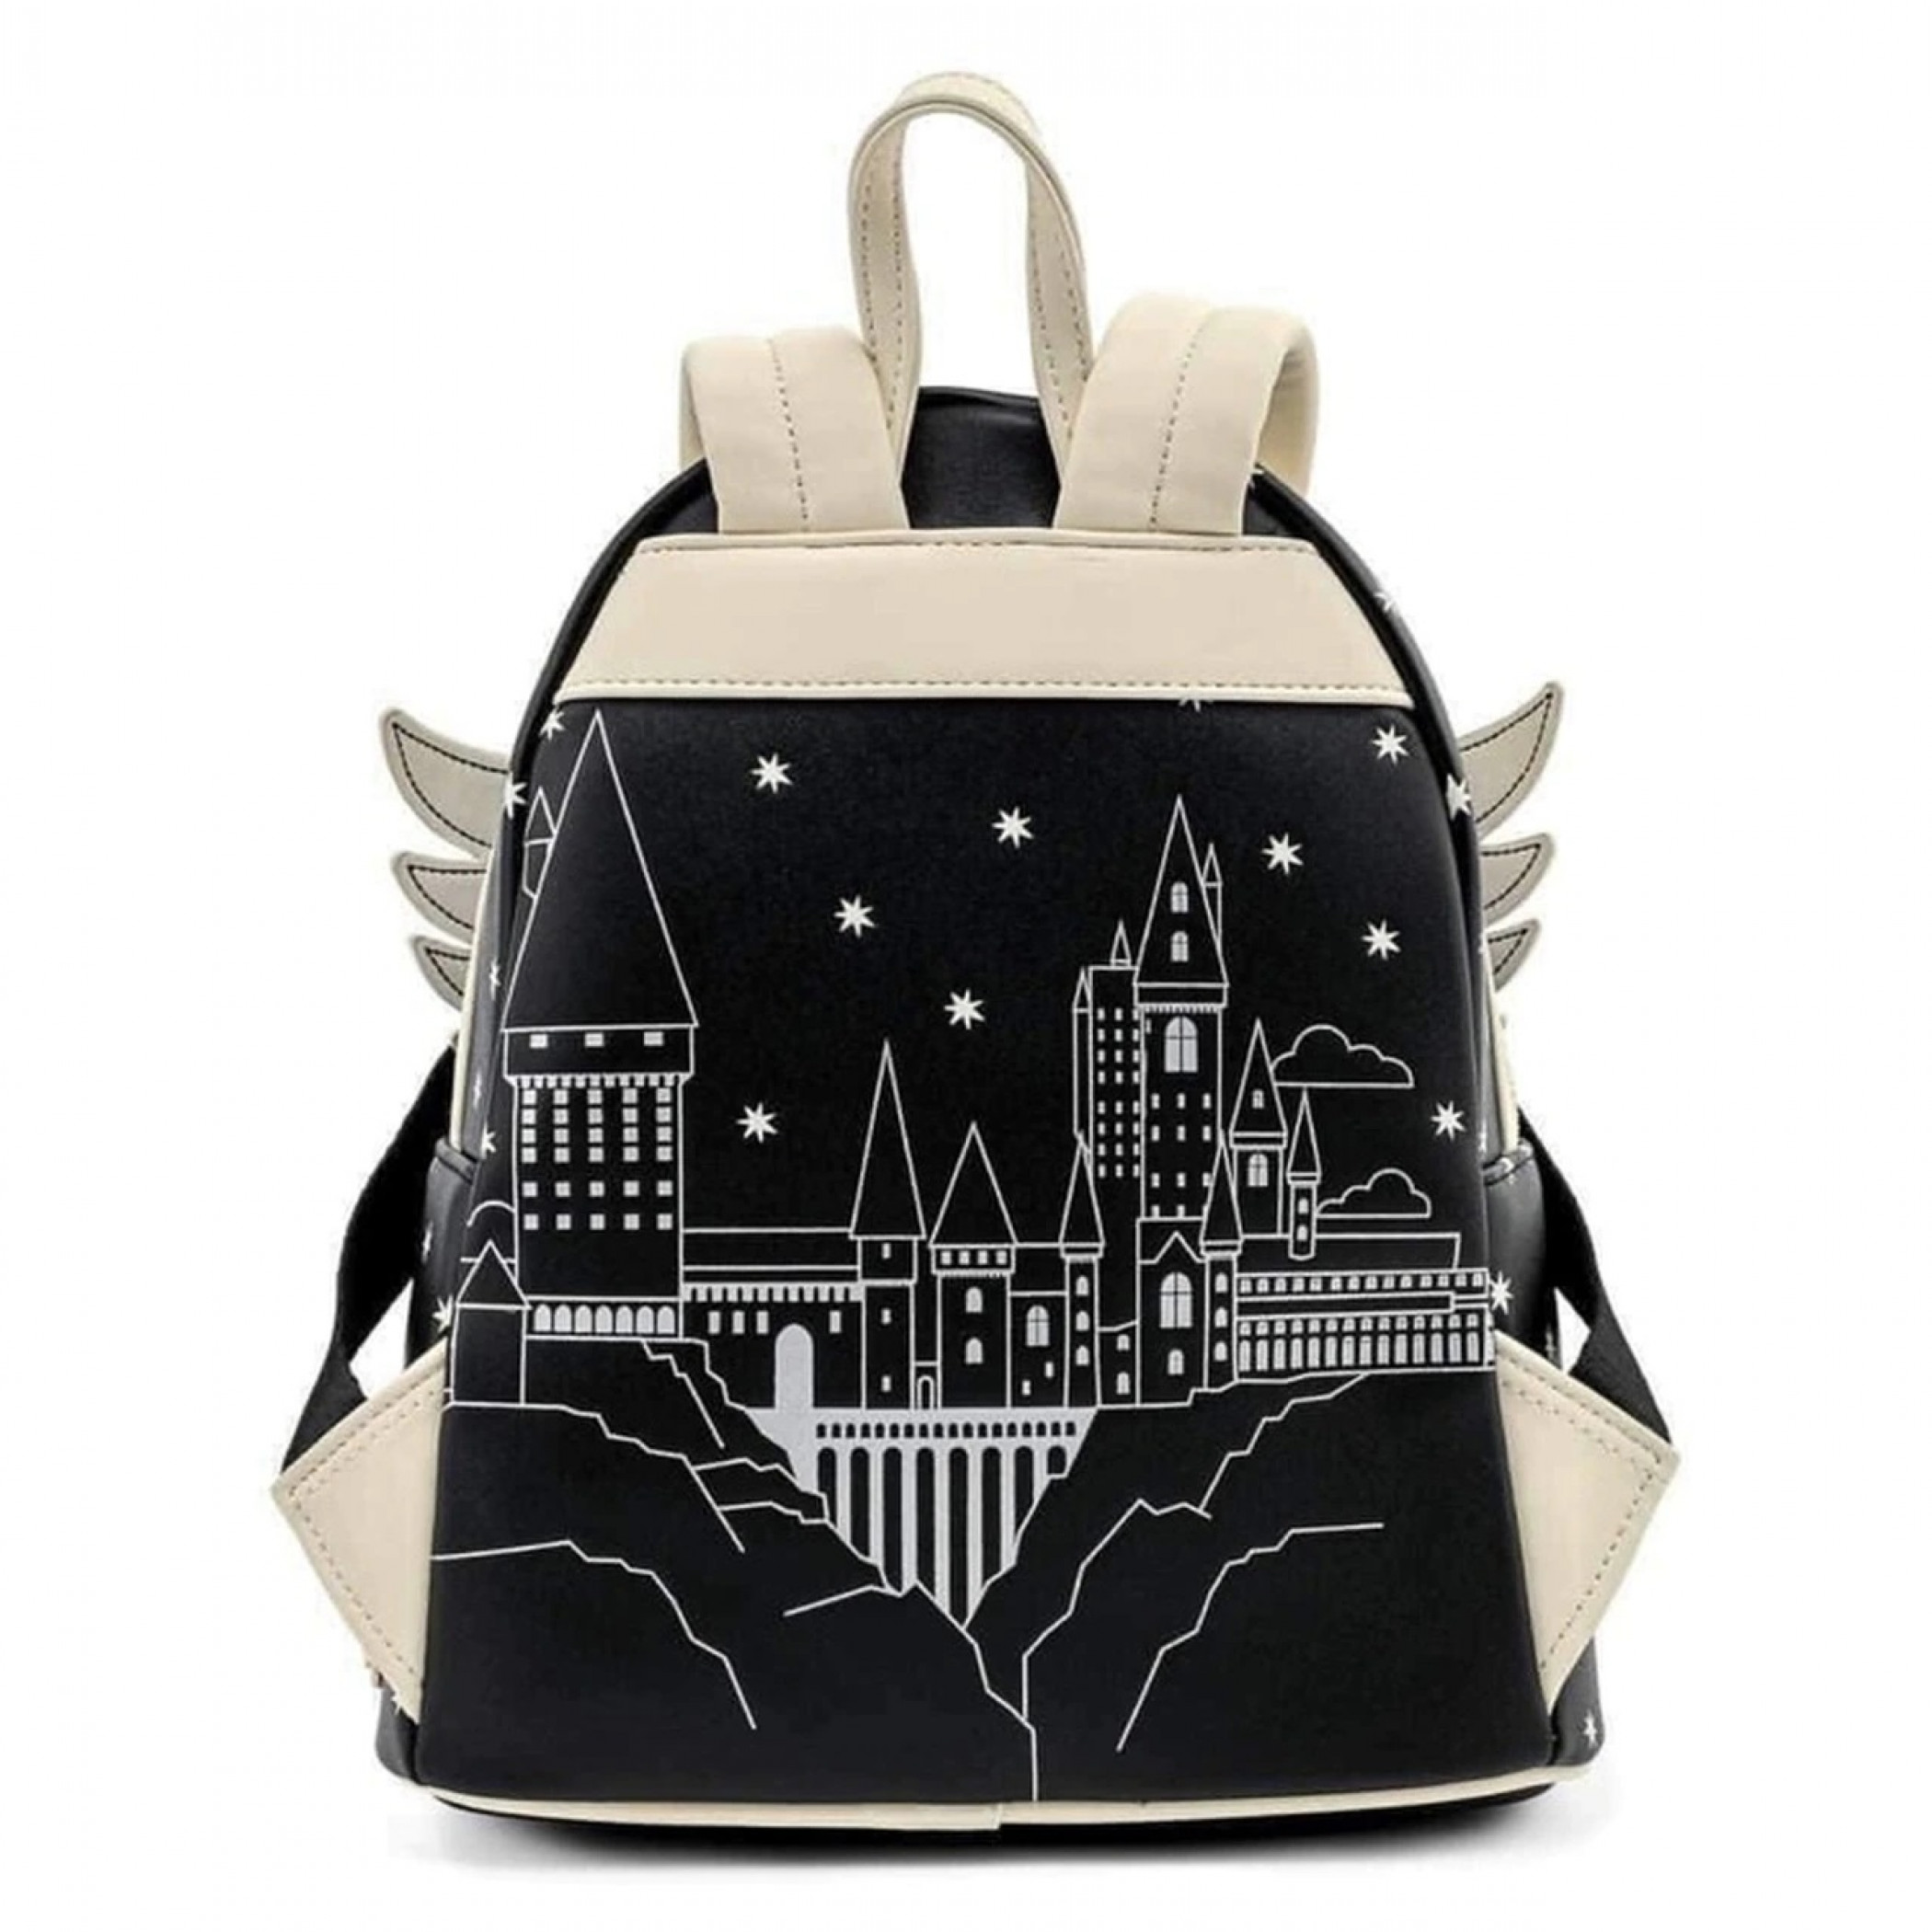 HARRY POTTER PRIMARK Backpack / Bag / Rucksack £8.99 - PicClick UK